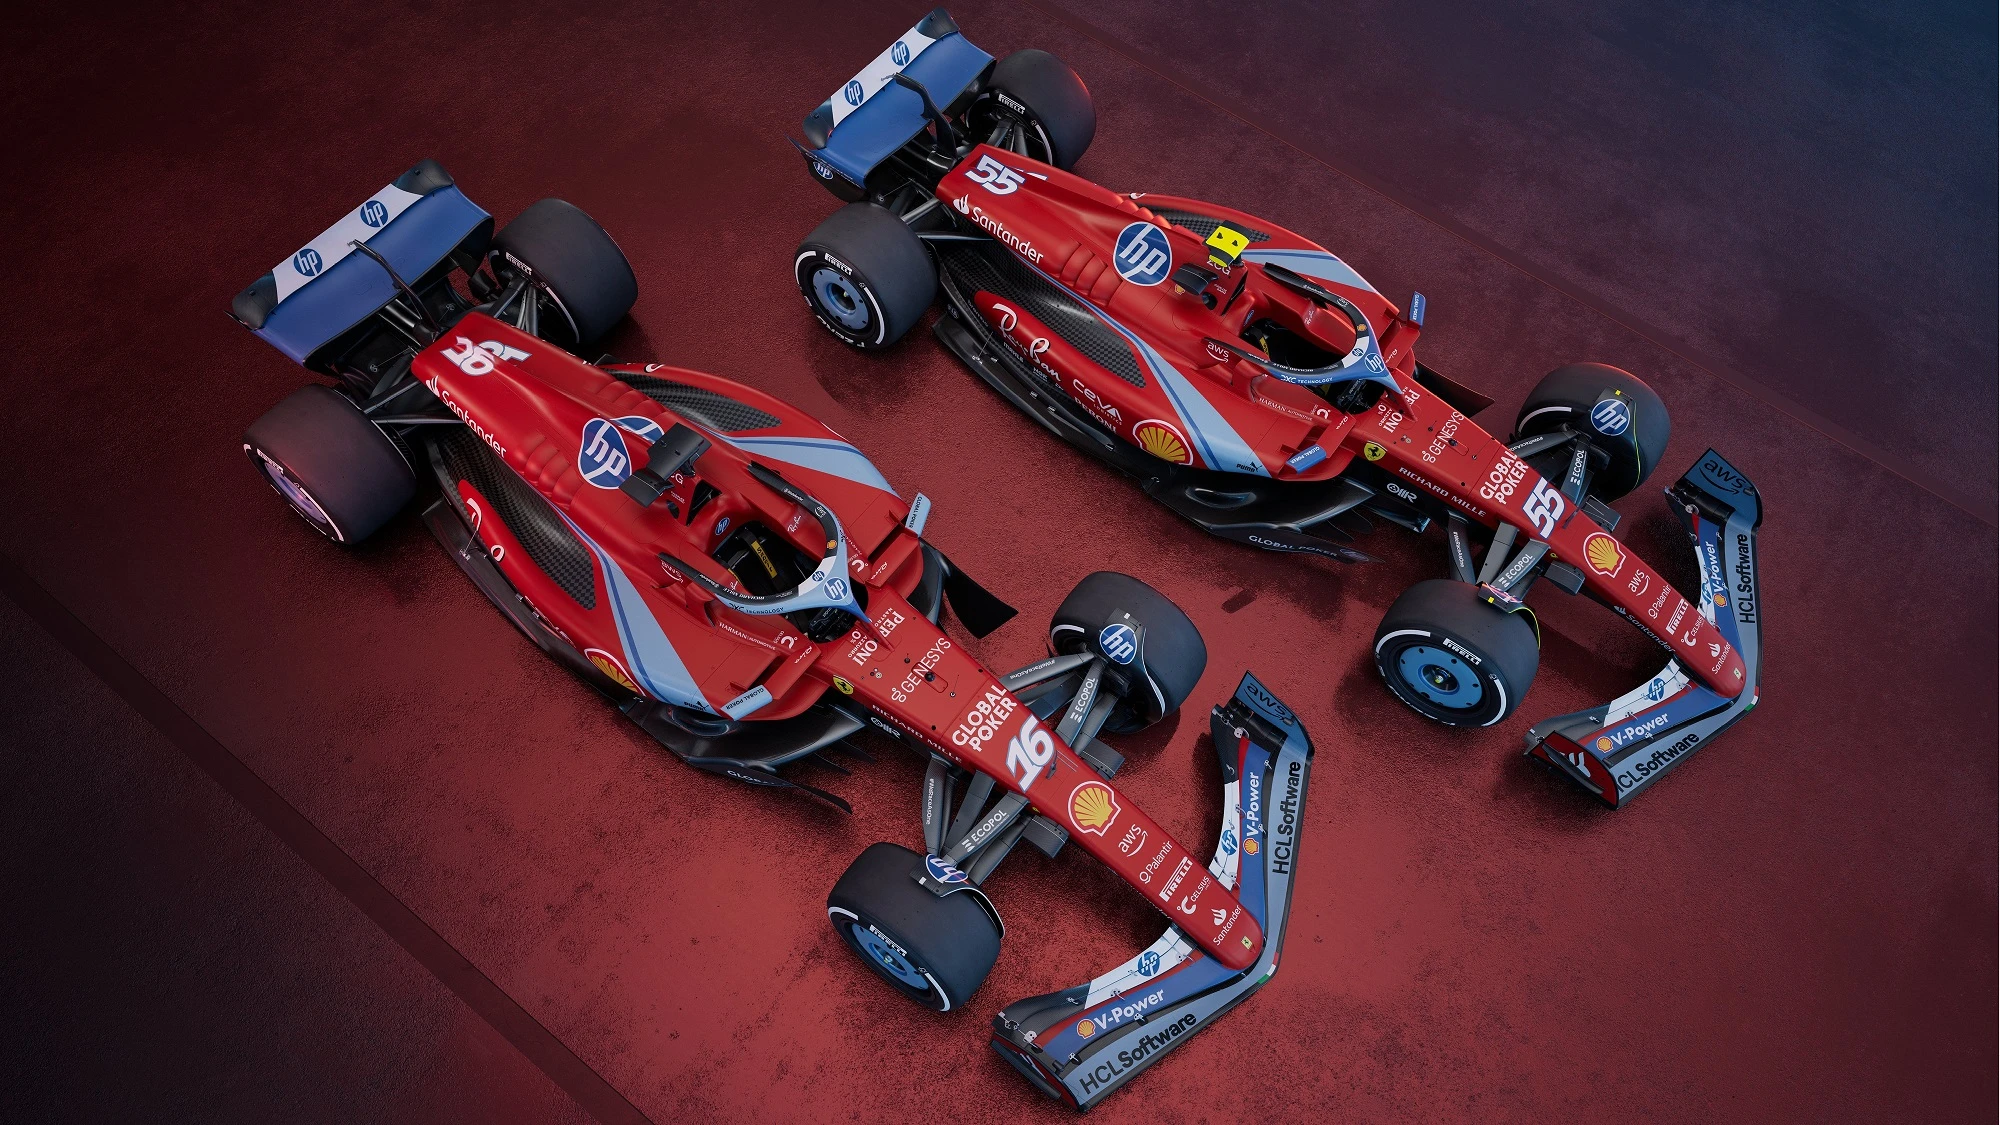 Ferrari'nin Miami GP'sinde kullanacağı özel renk düzeni